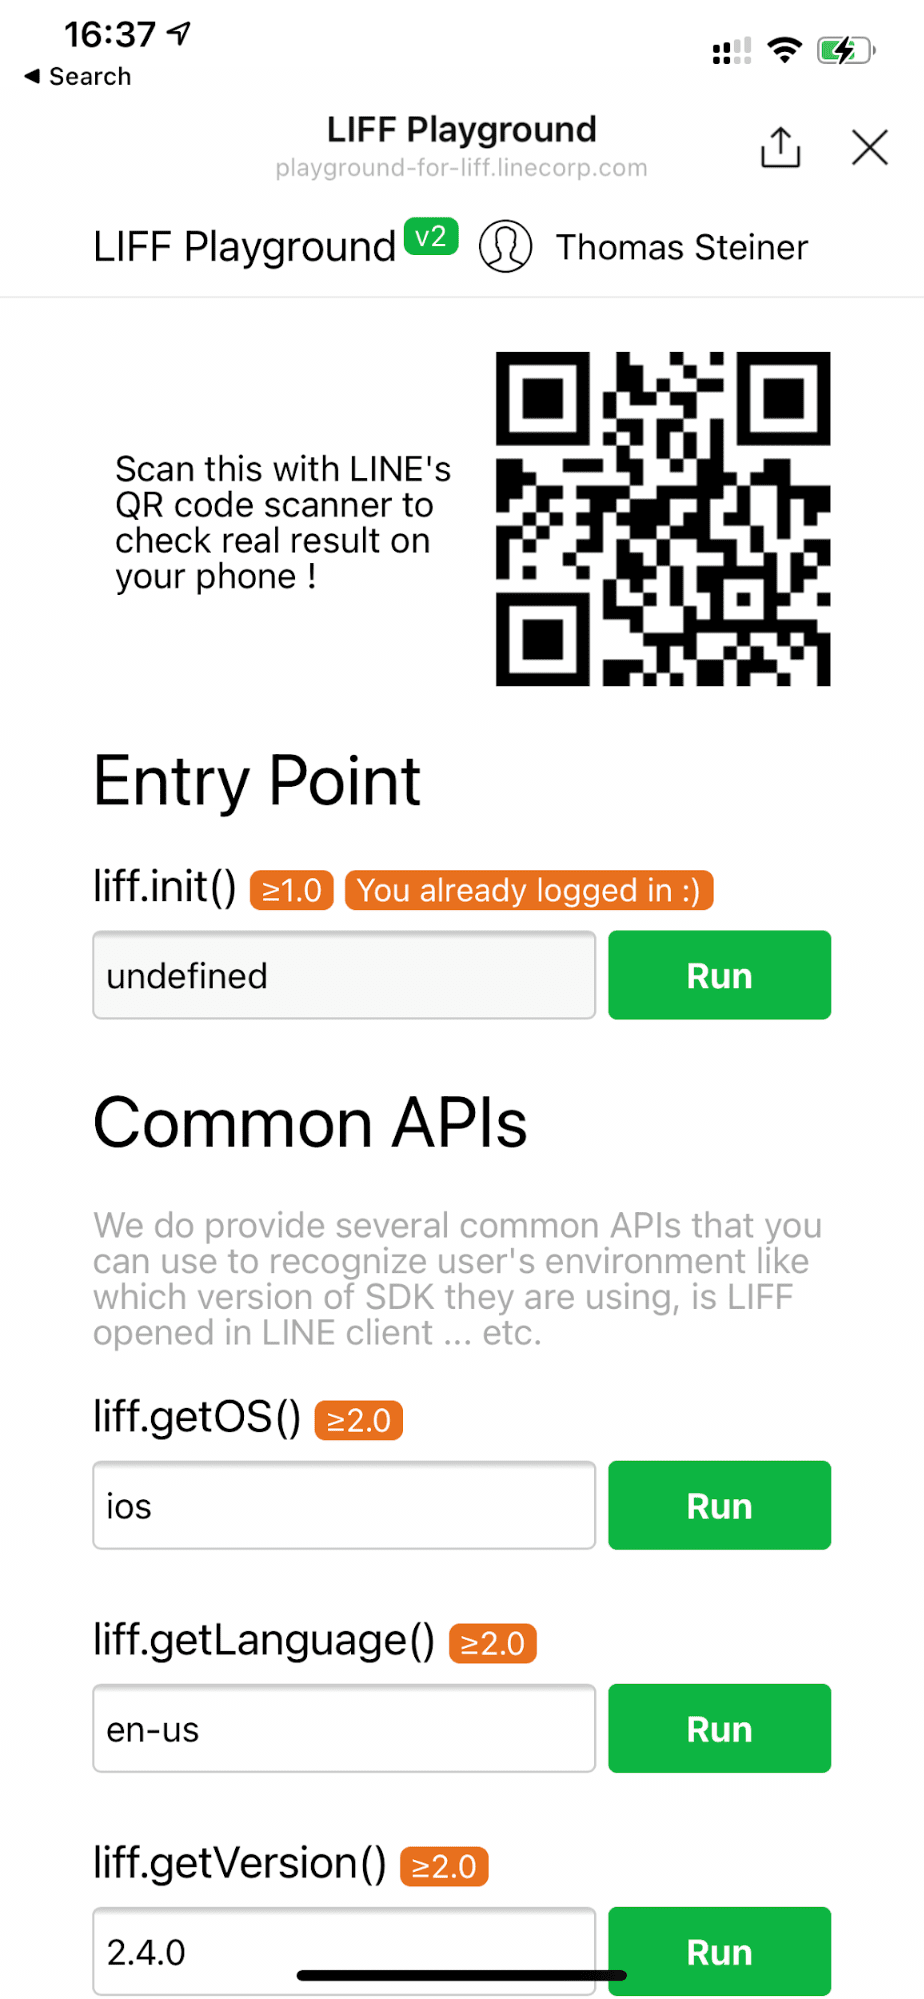 iOS cihazda çalışan LINE Playground demo uygulaması, &quot;liff.getOS()&quot; fonksiyonunun &quot;ios&quot; değerini döndürdüğünü gösteriyor.